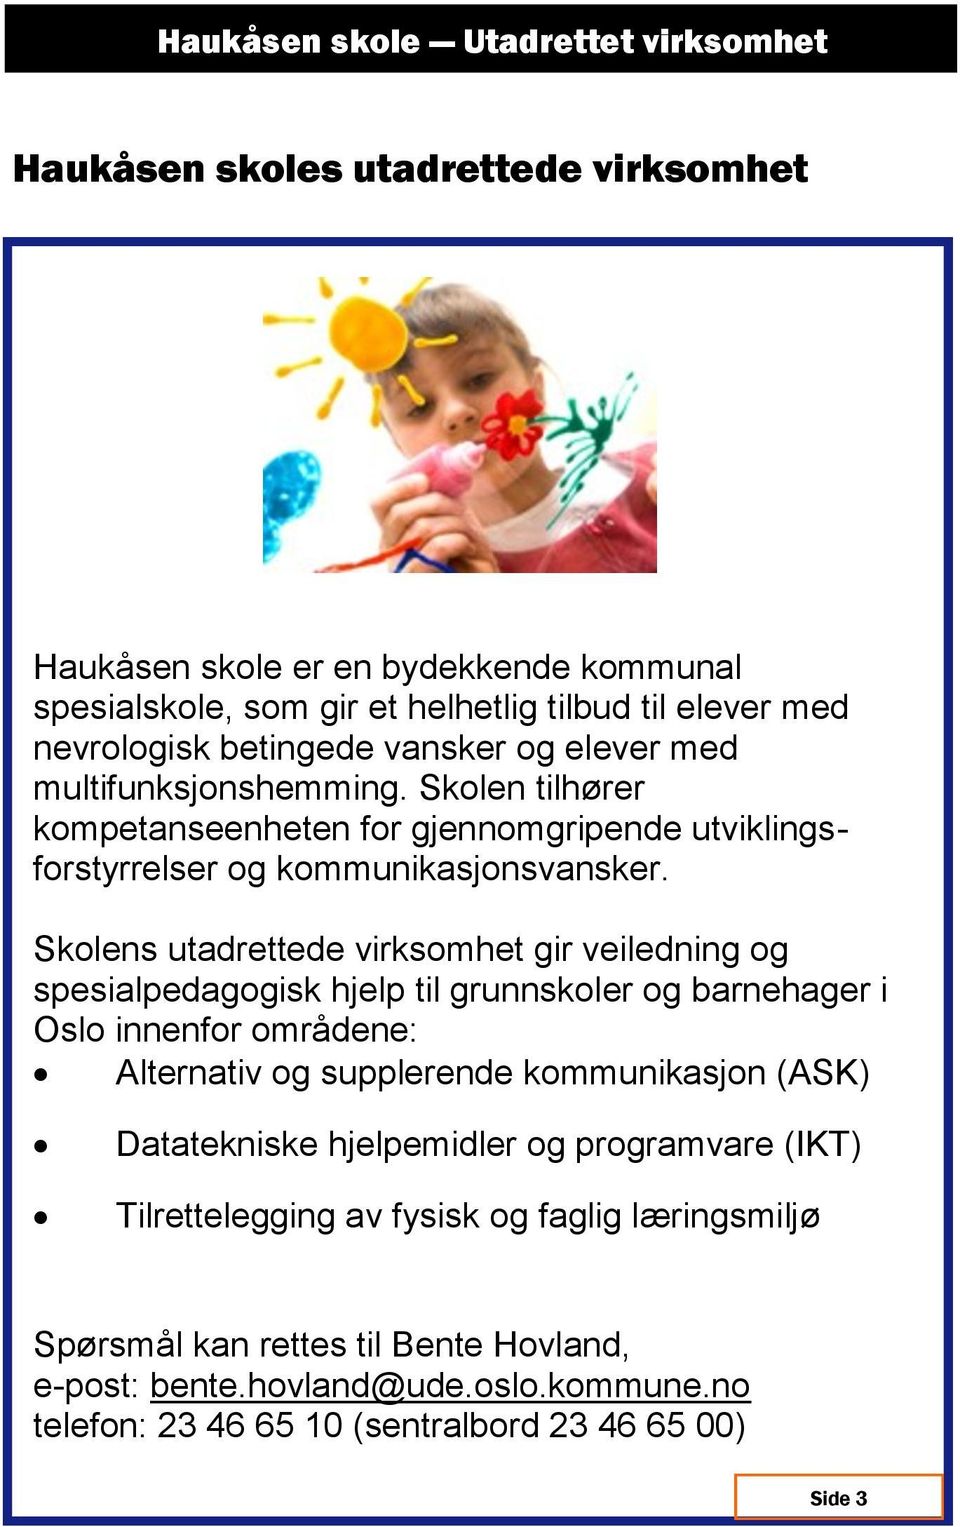 Skolens utadrettede virksomhet gir veiledning og spesialpedagogisk hjelp til grunnskoler og barnehager i Oslo innenfor områdene: Alternativ og supplerende kommunikasjon (ASK)